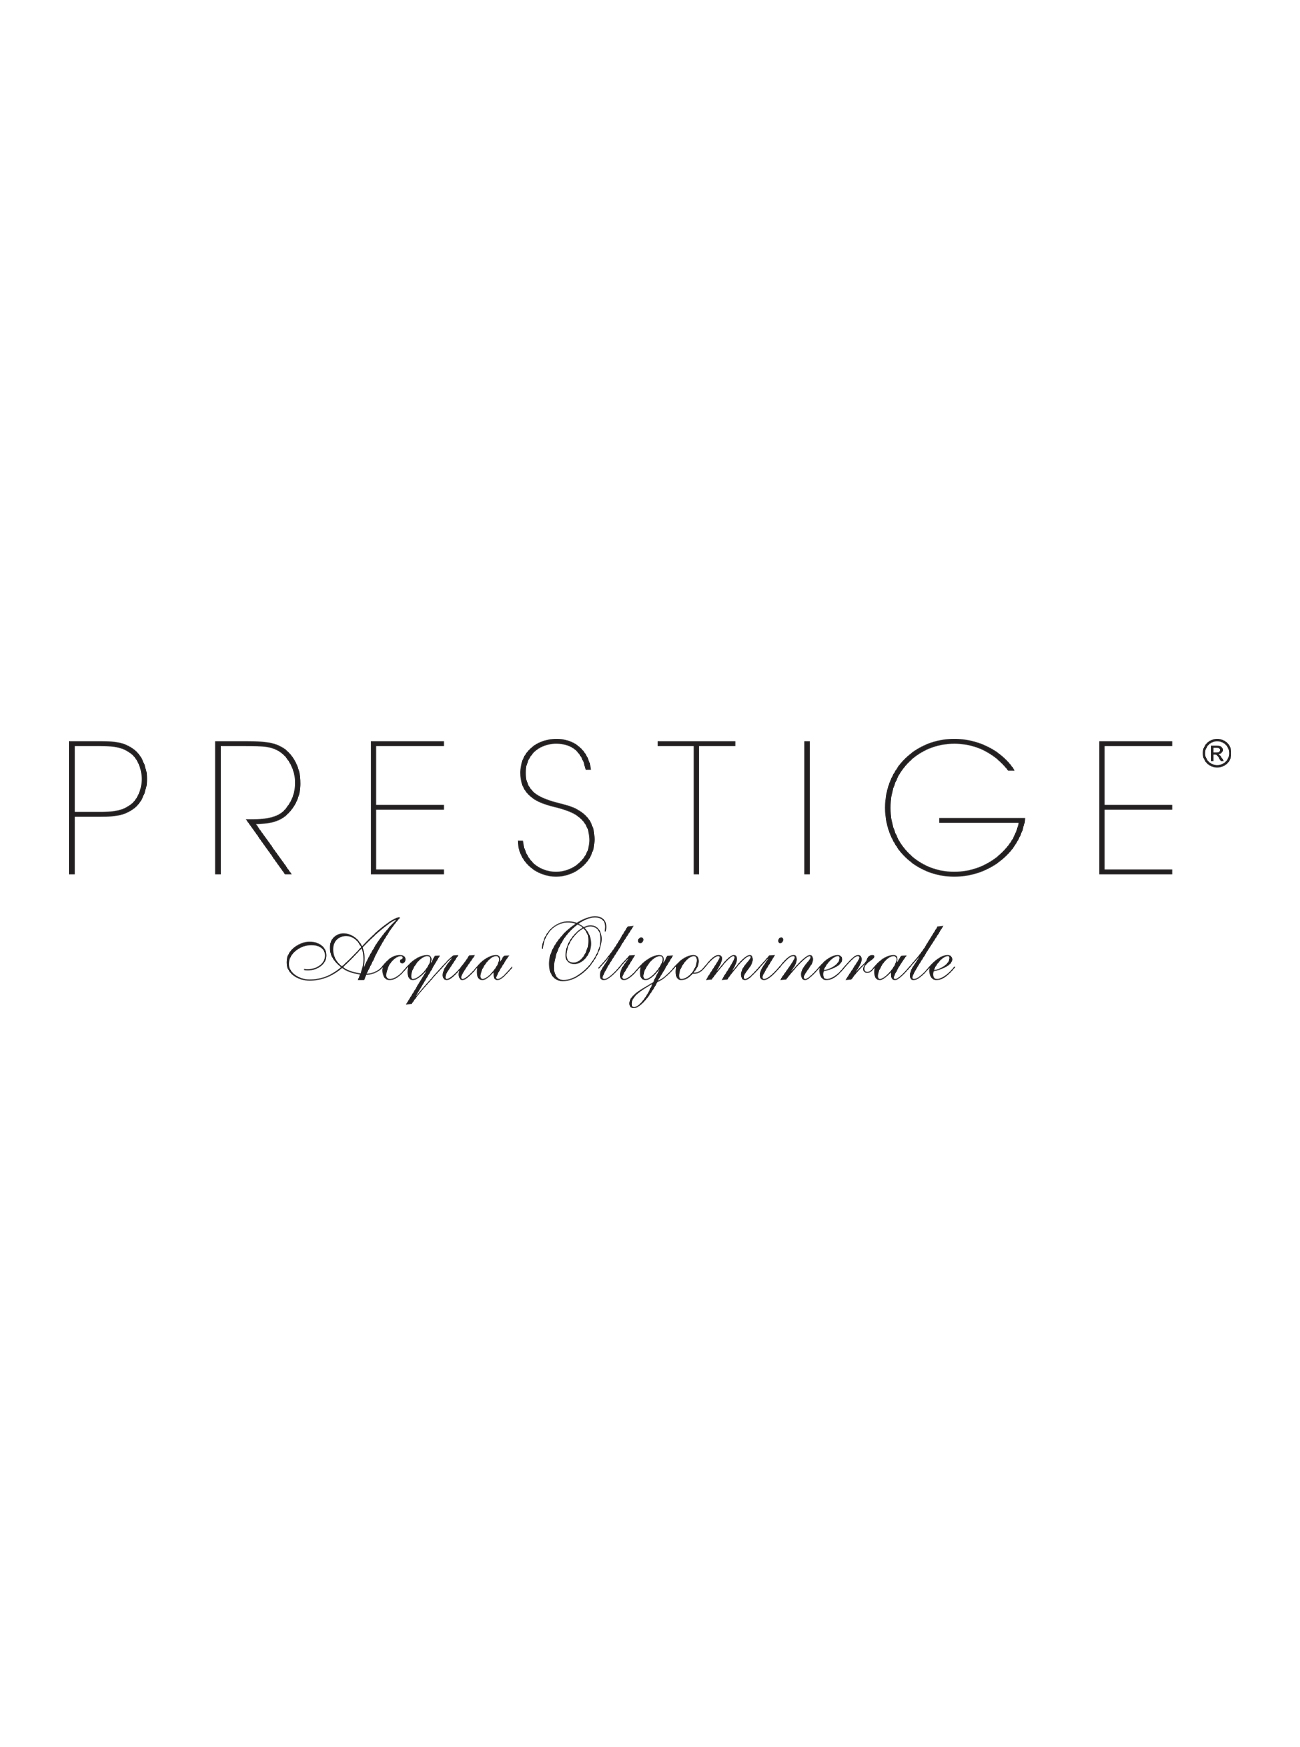 prestige-portfolio-clienti-mercomm-agenzia-comunicazione